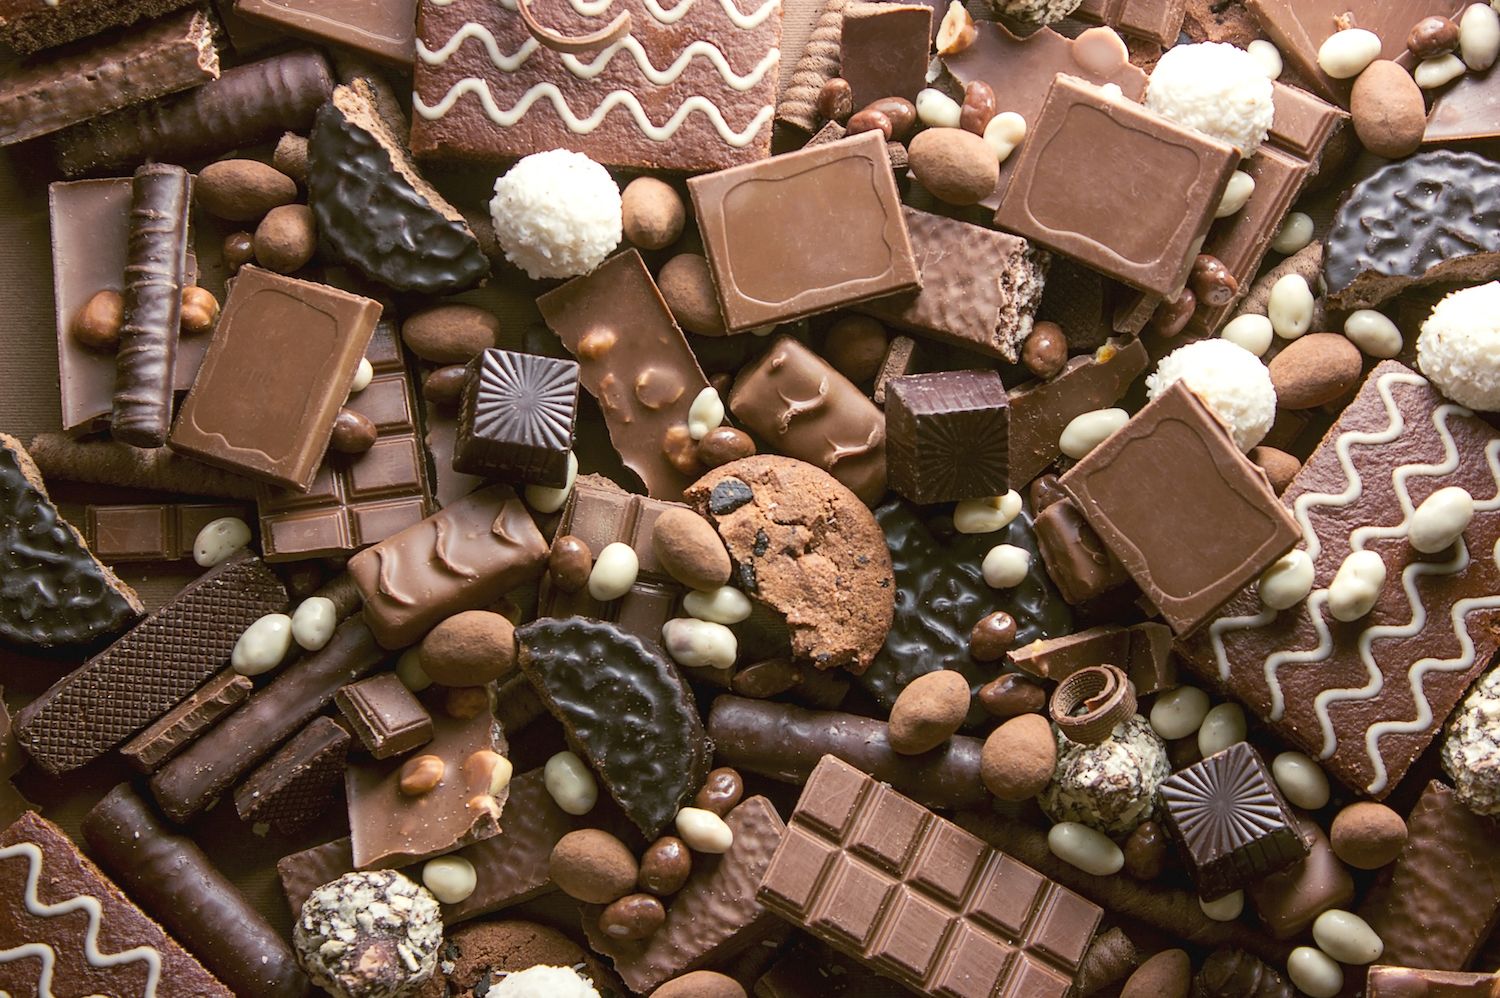 Reći da svi vole čokoladu očito je pretjerano, ali čokolada je nešto u čemu mnogi ljudi uživaju na razne načine